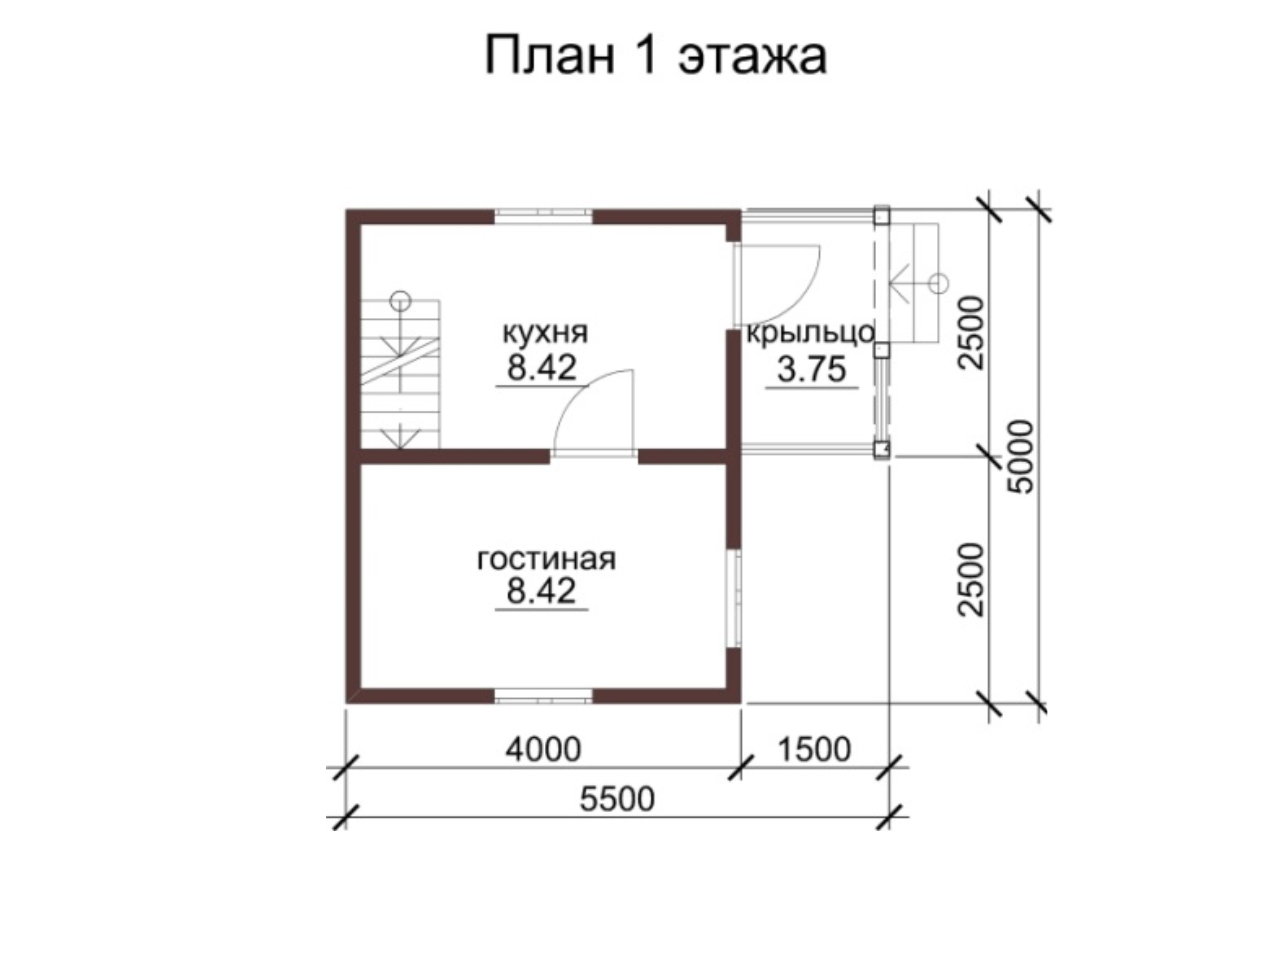 Проект и планировка дачного дома площадью до 30 квм размерами 5х4,5х5 и 5х6, советы по обустройству дома